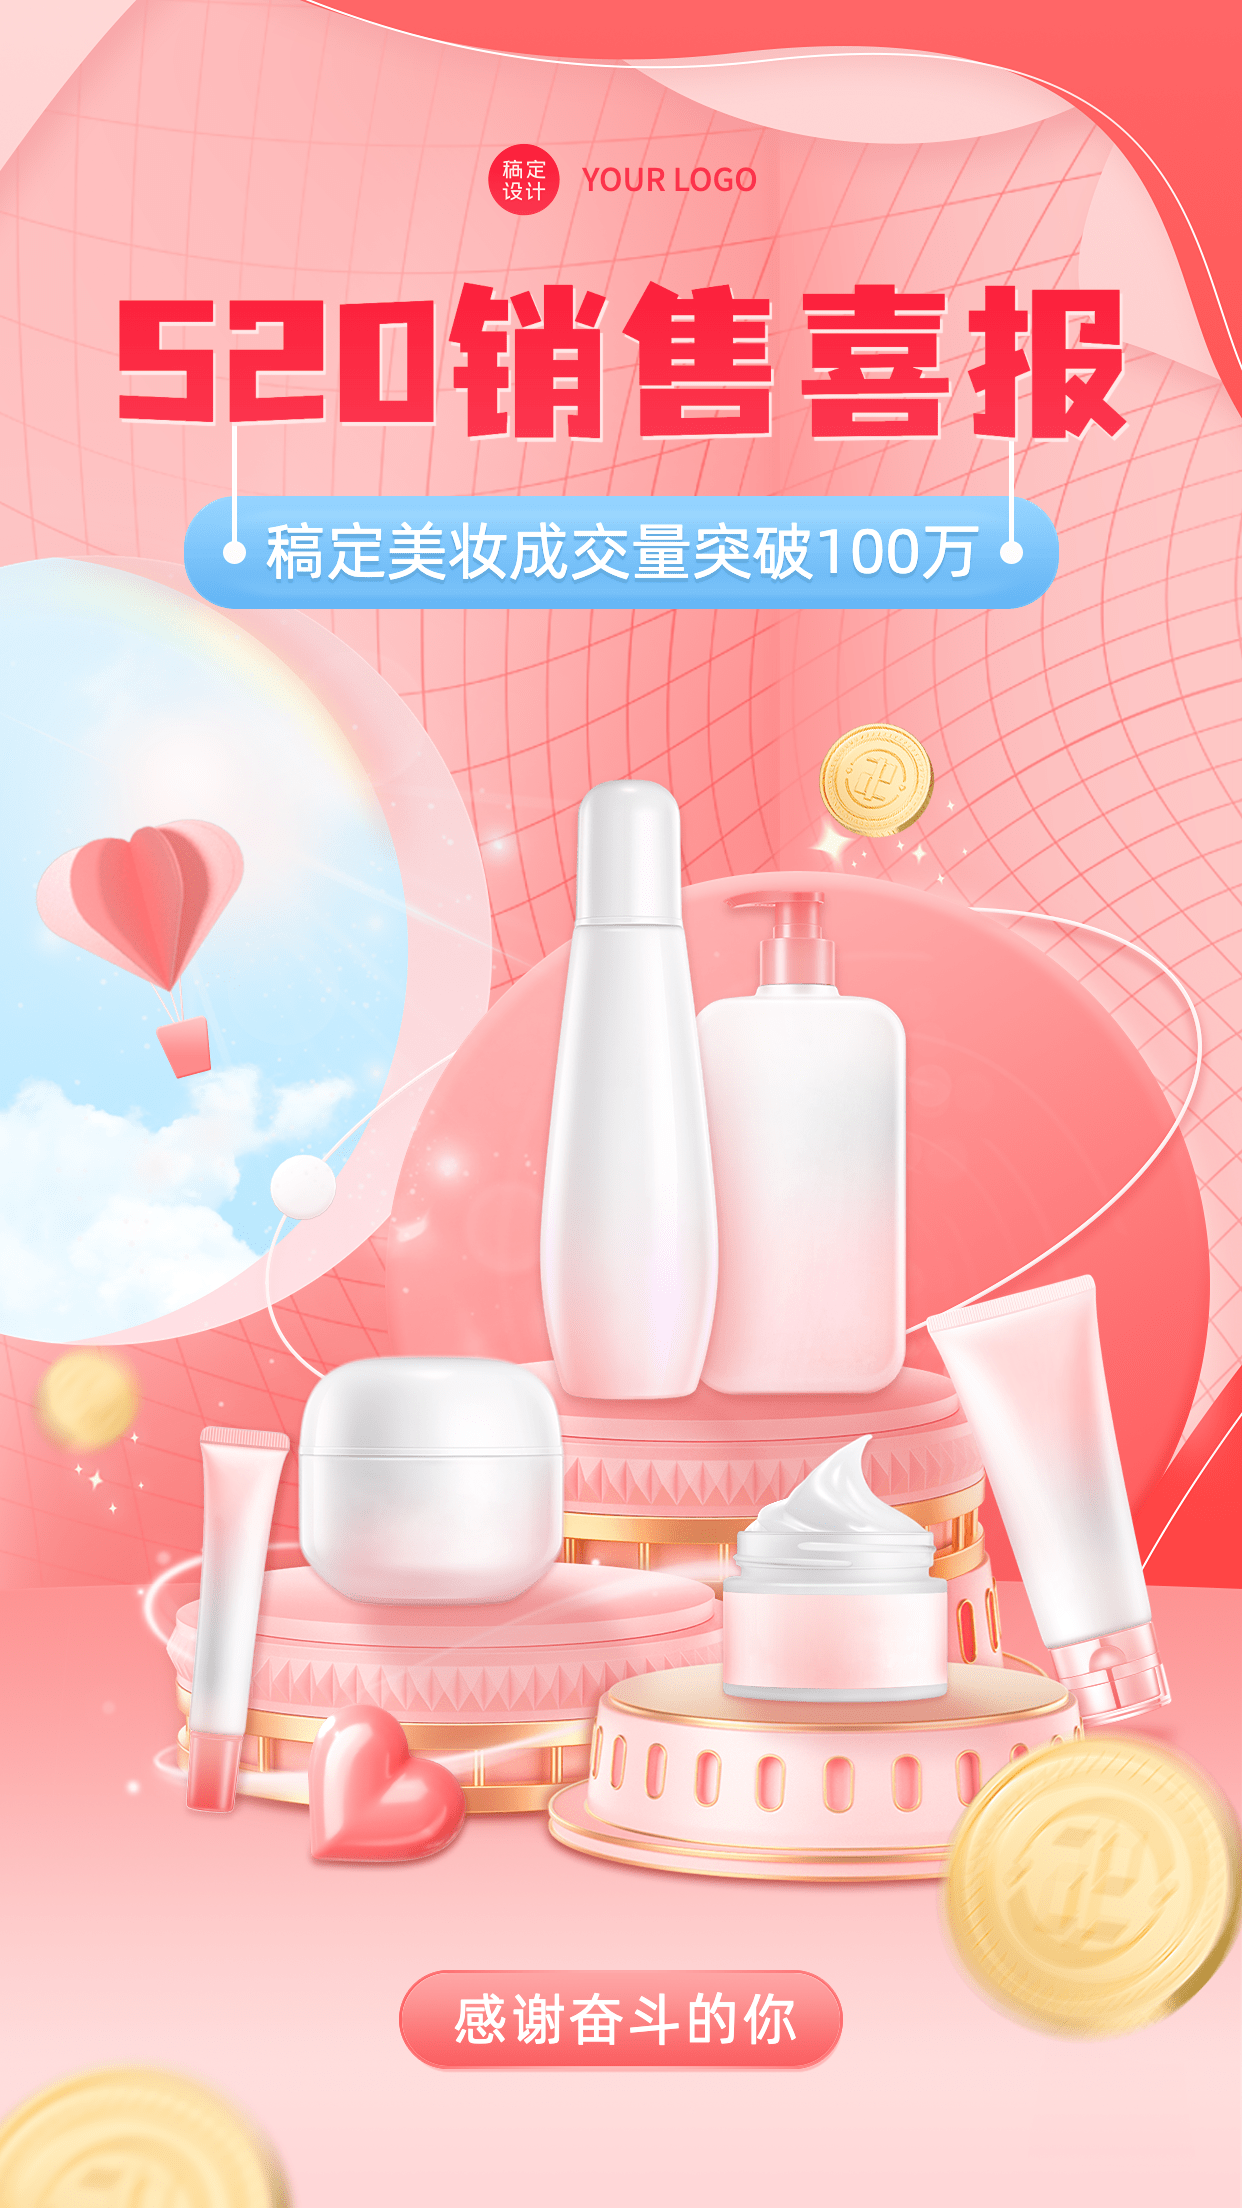 微商520美容美妆产品营销手机海报预览效果